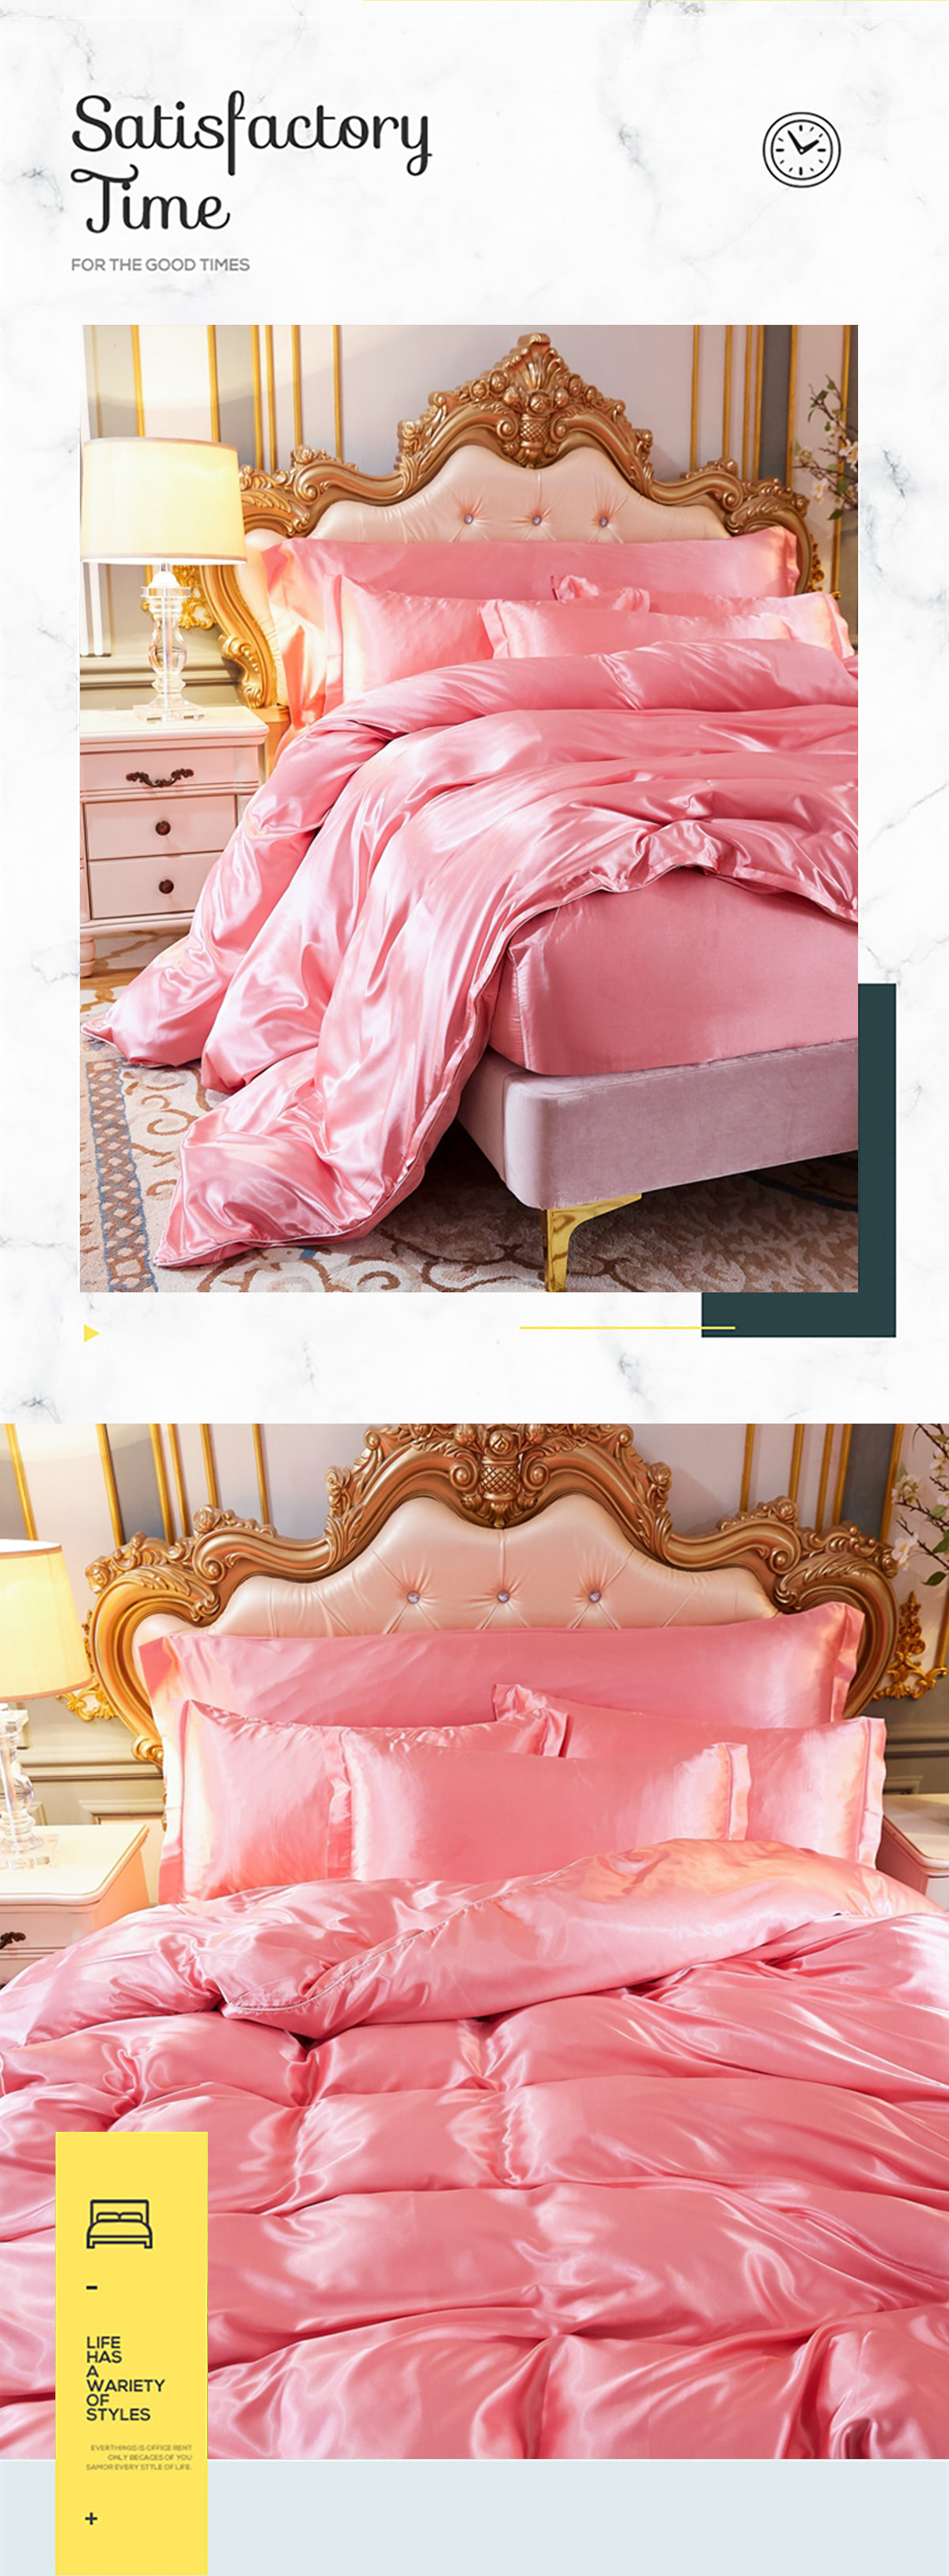 Ultra-Soft-Silky-Satin-Bedding-Linen-Duvet-Cover-4-Pcs-Set12.jpg